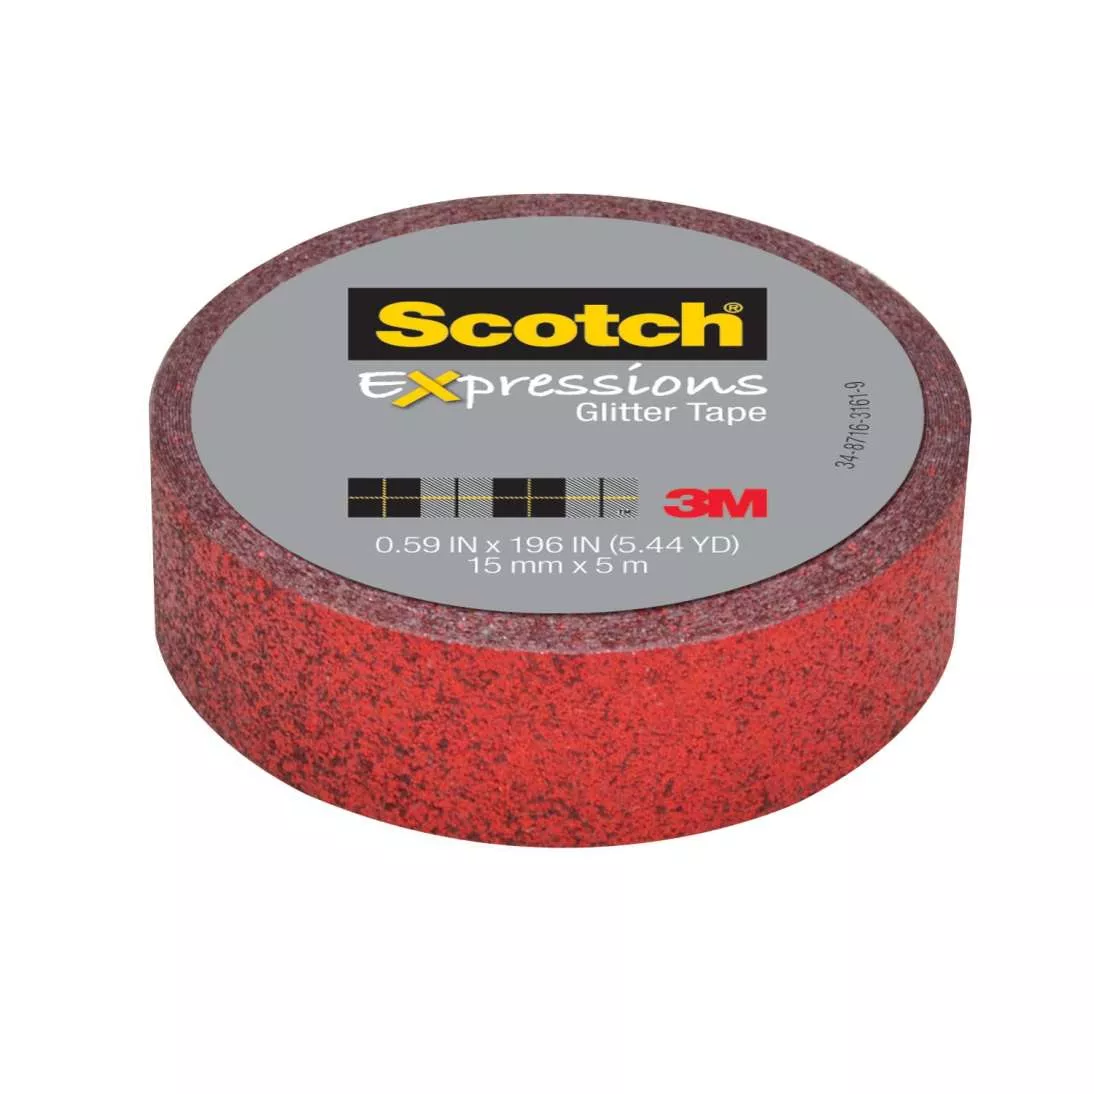 Scotch® Expressions Glitter Tape C514-RED, .59 in x 196 in (15 mm x 5 m)
Red Glitter